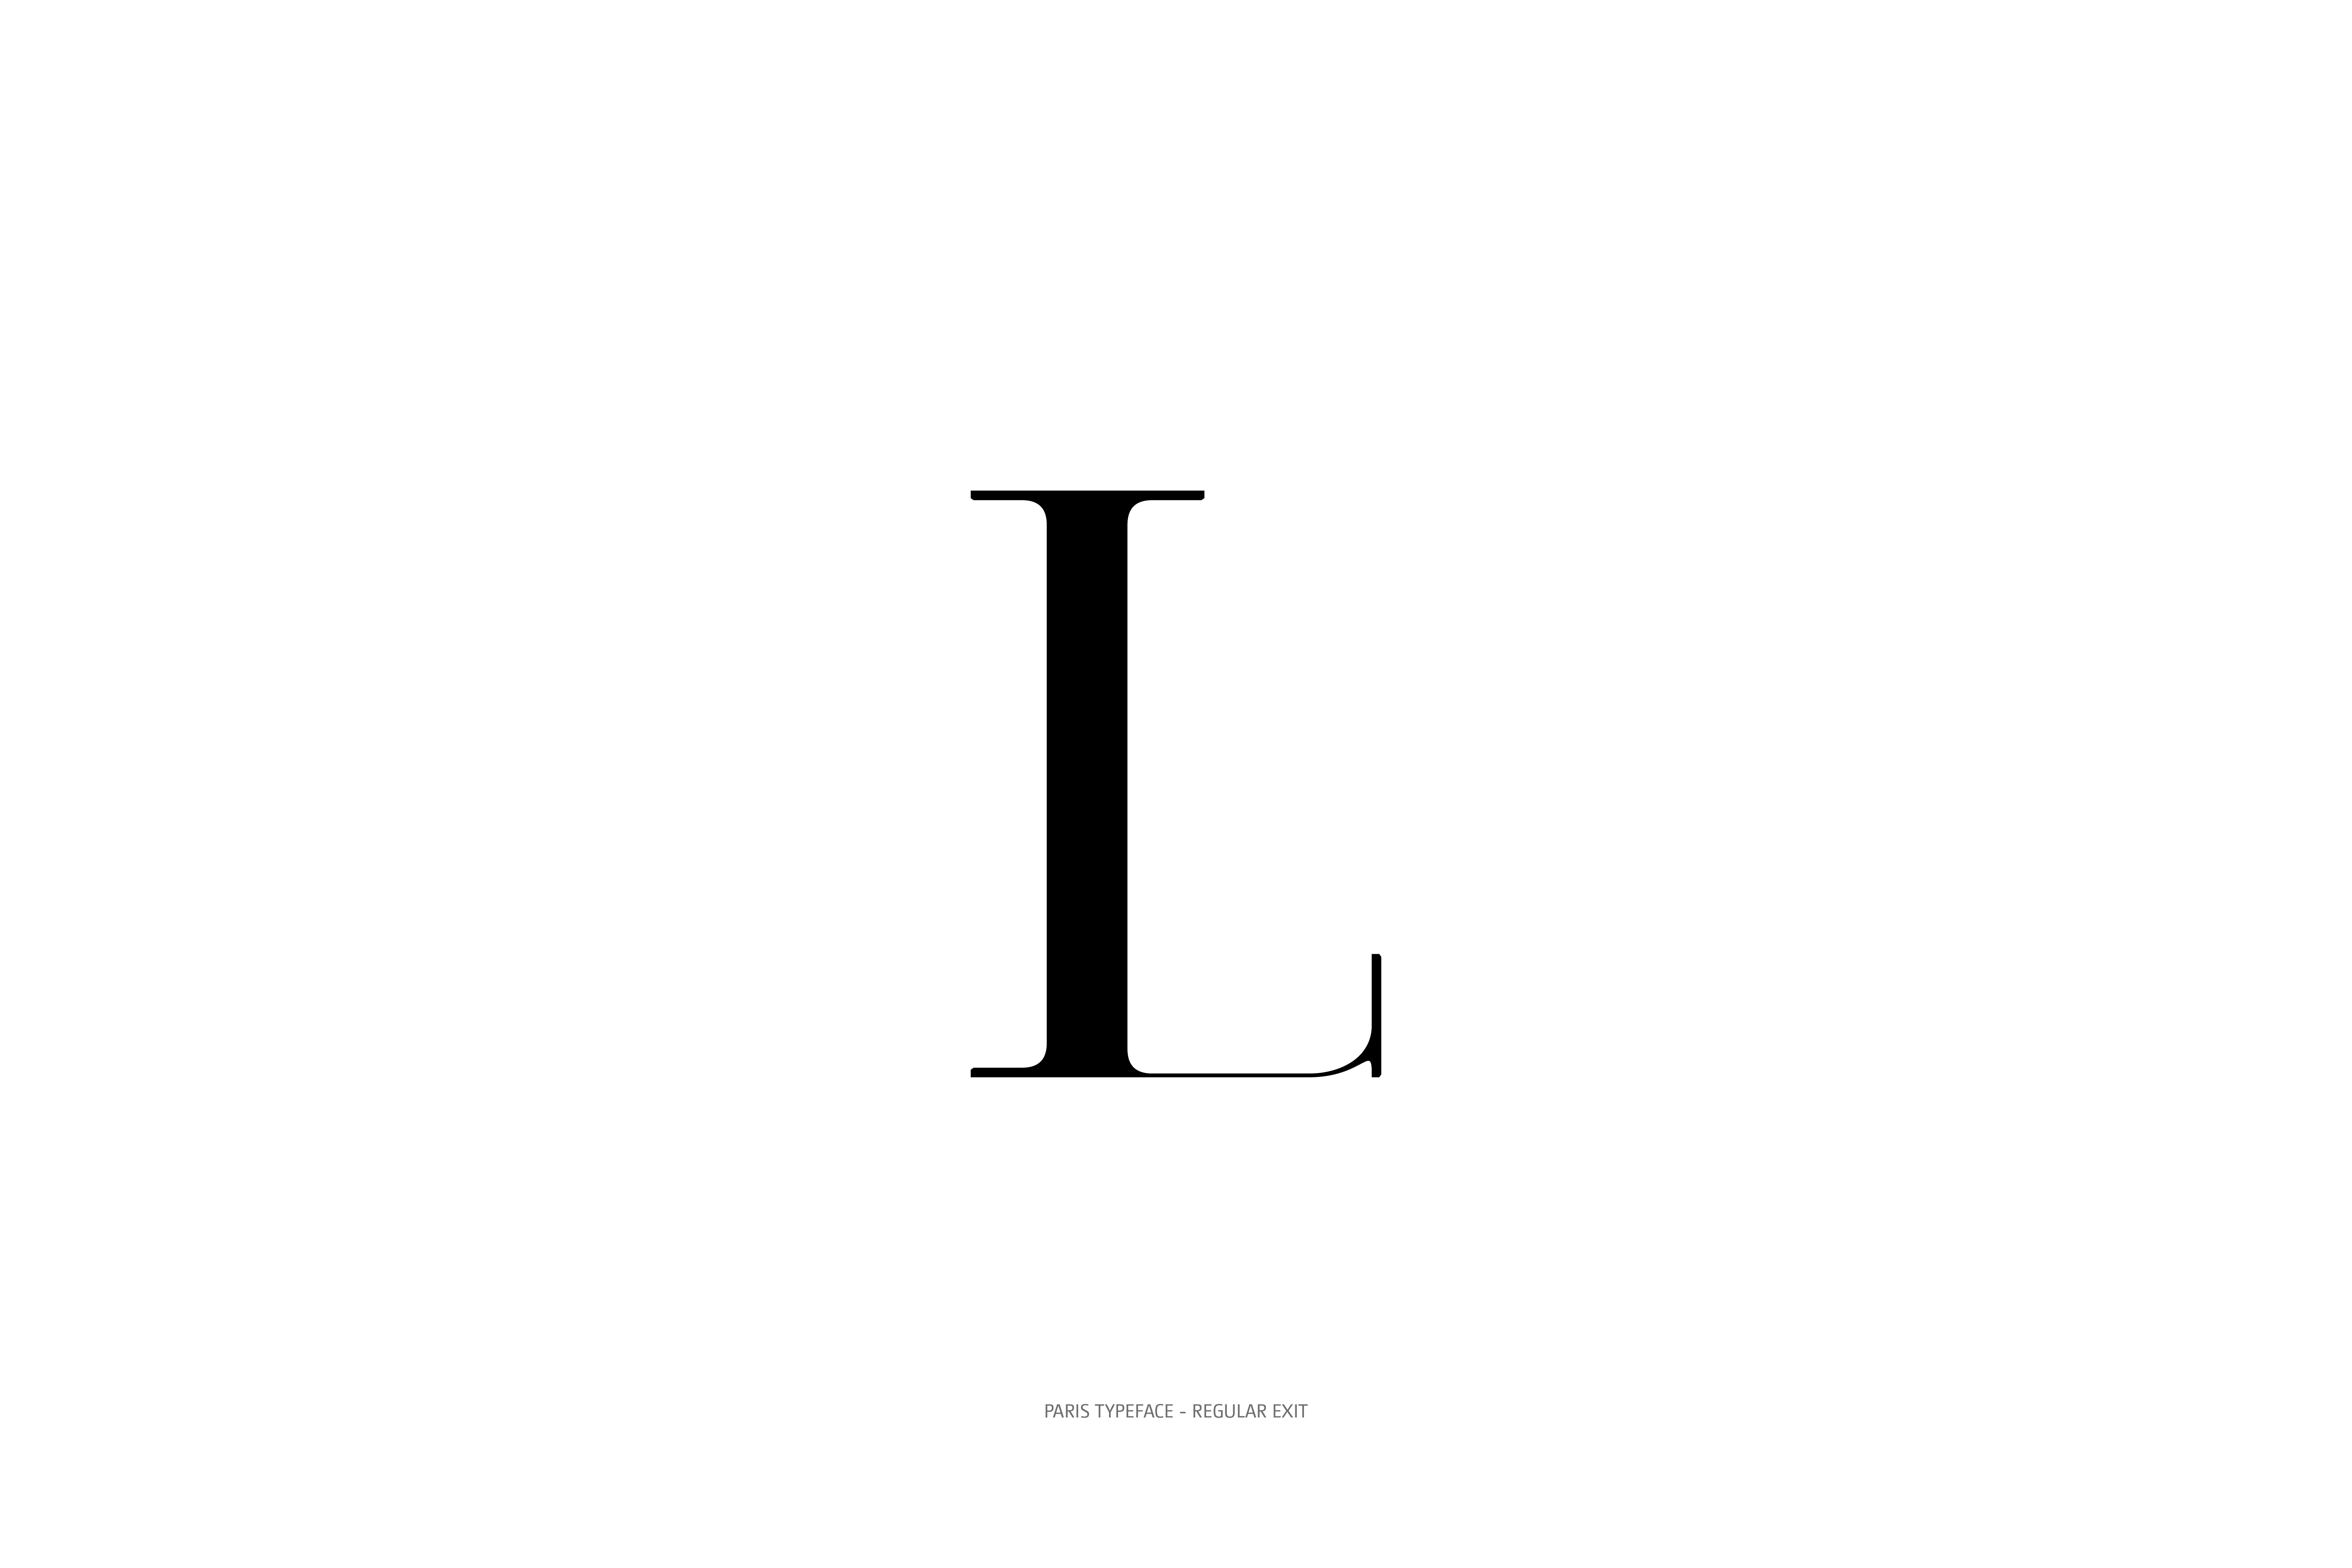 Paris Typeface Regular Exit L